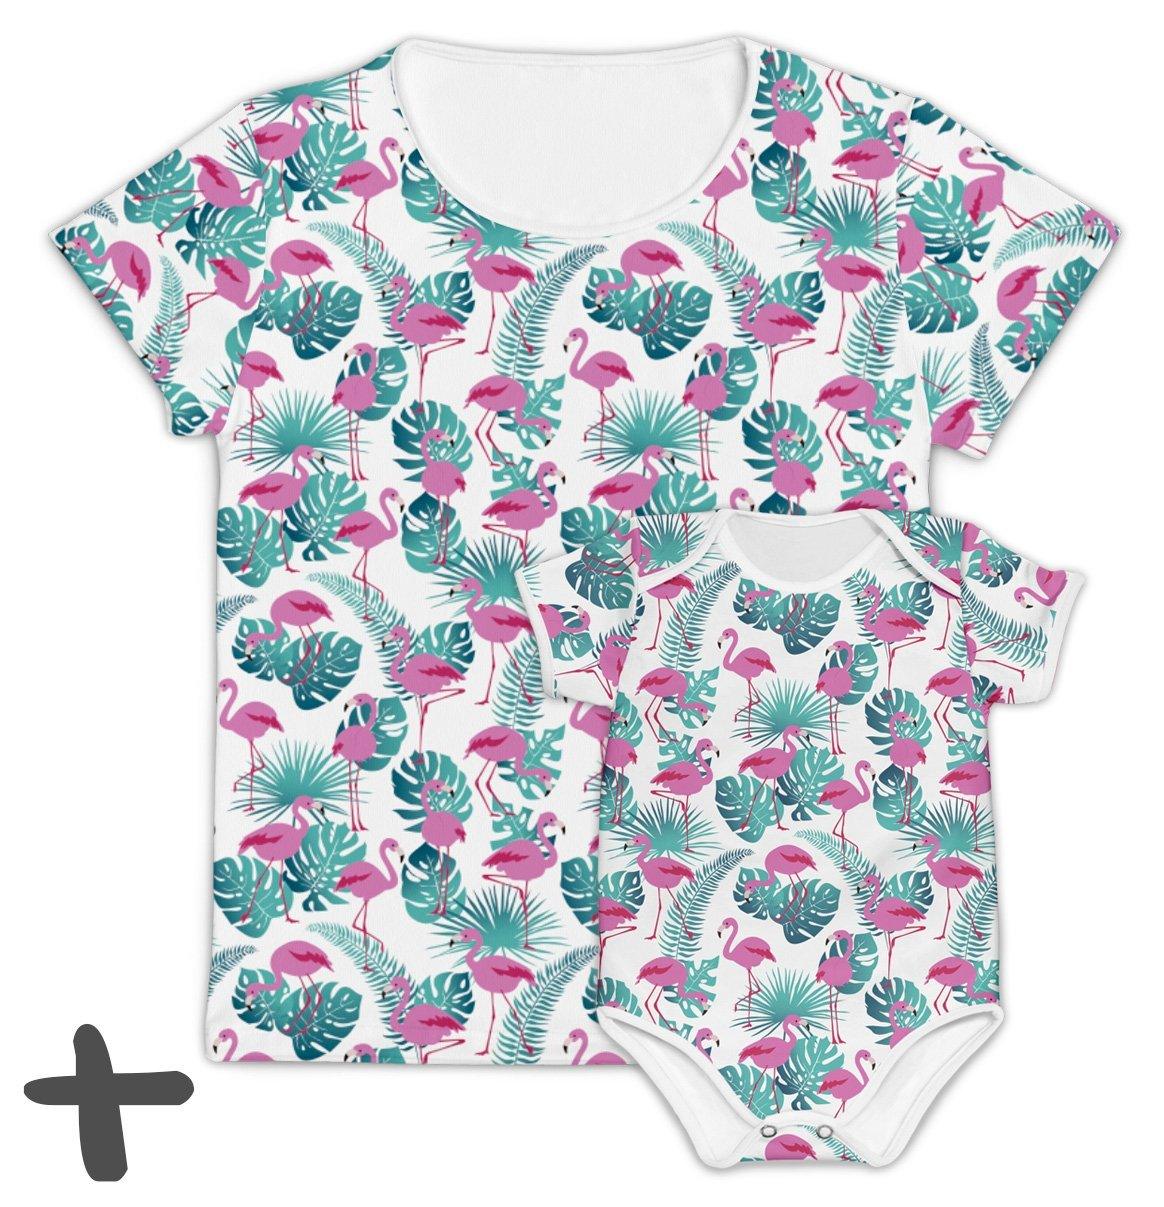 Tal Mãe Tal Baby Flamingos - Mini Boo Store